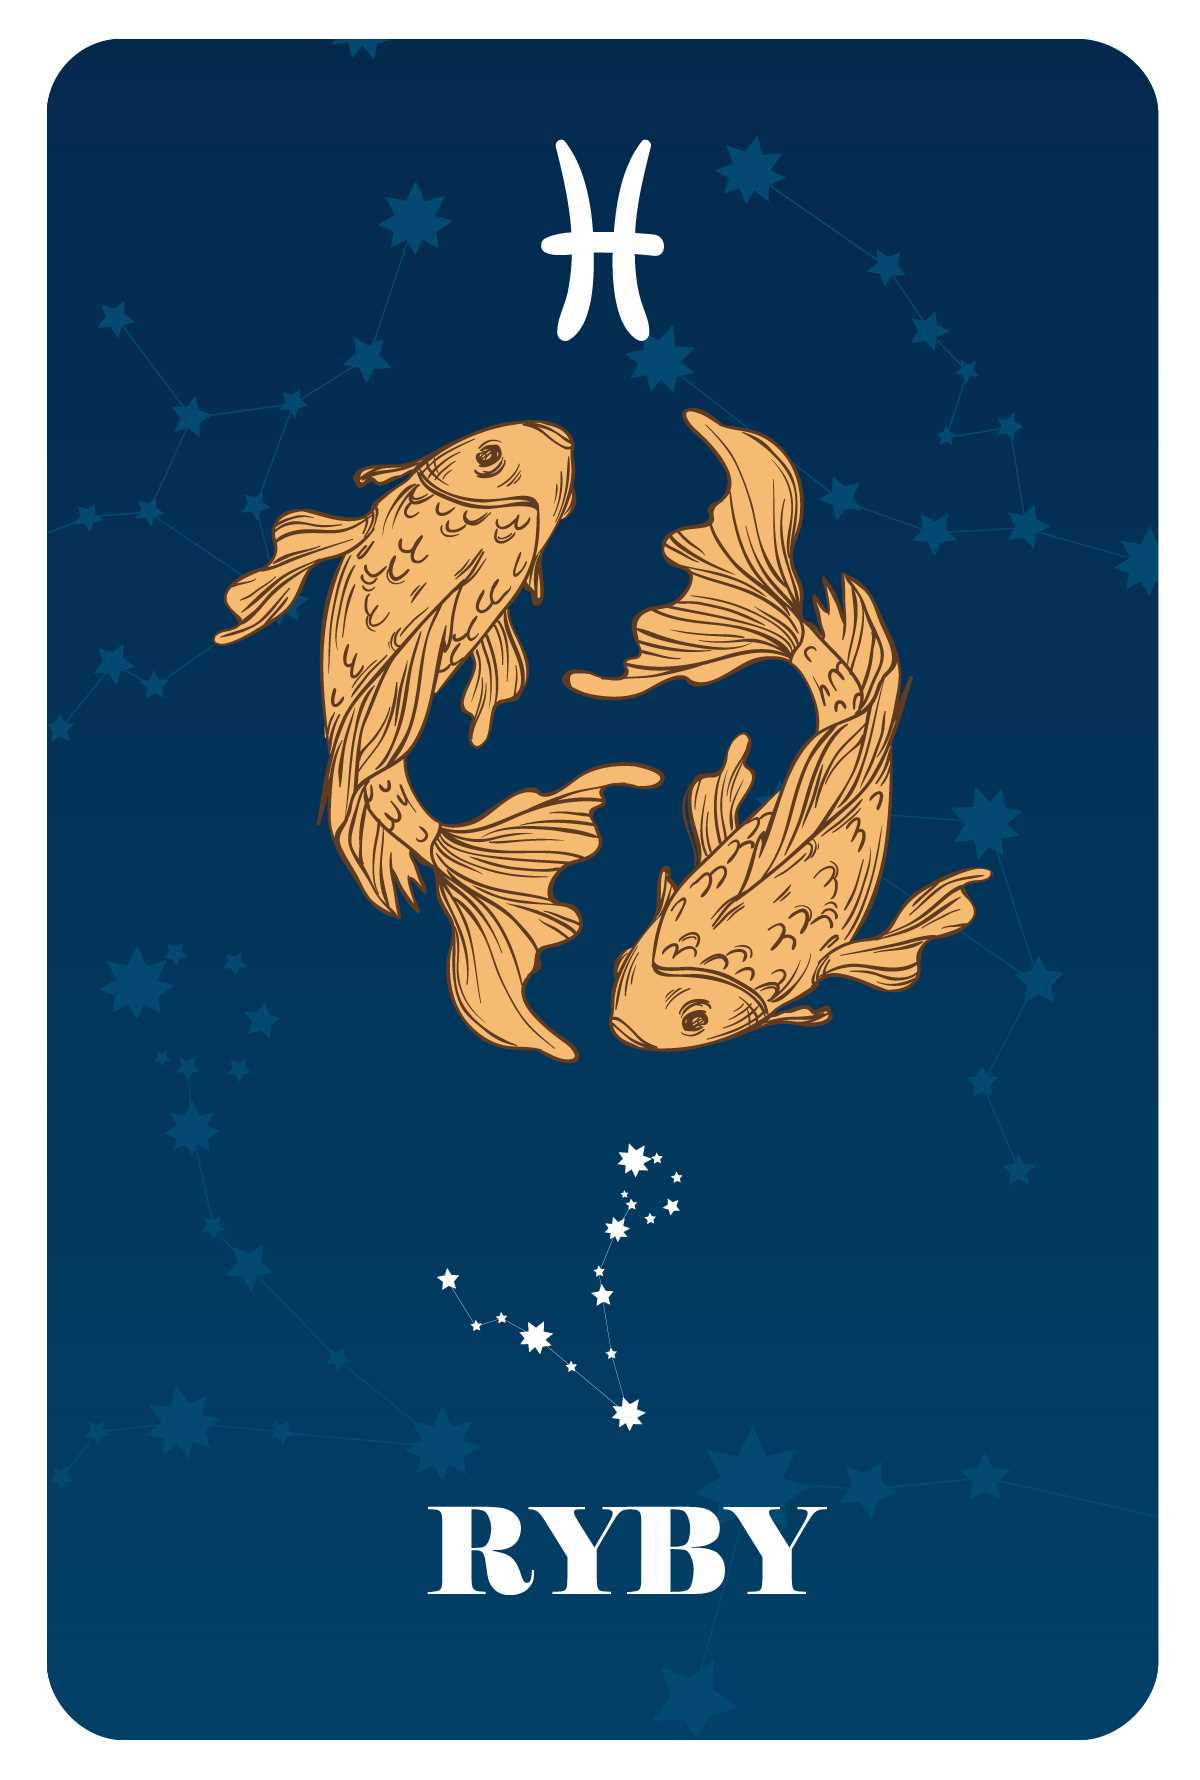 Horoskop ryby miłosny - sprawdź co czeka cię w miłości